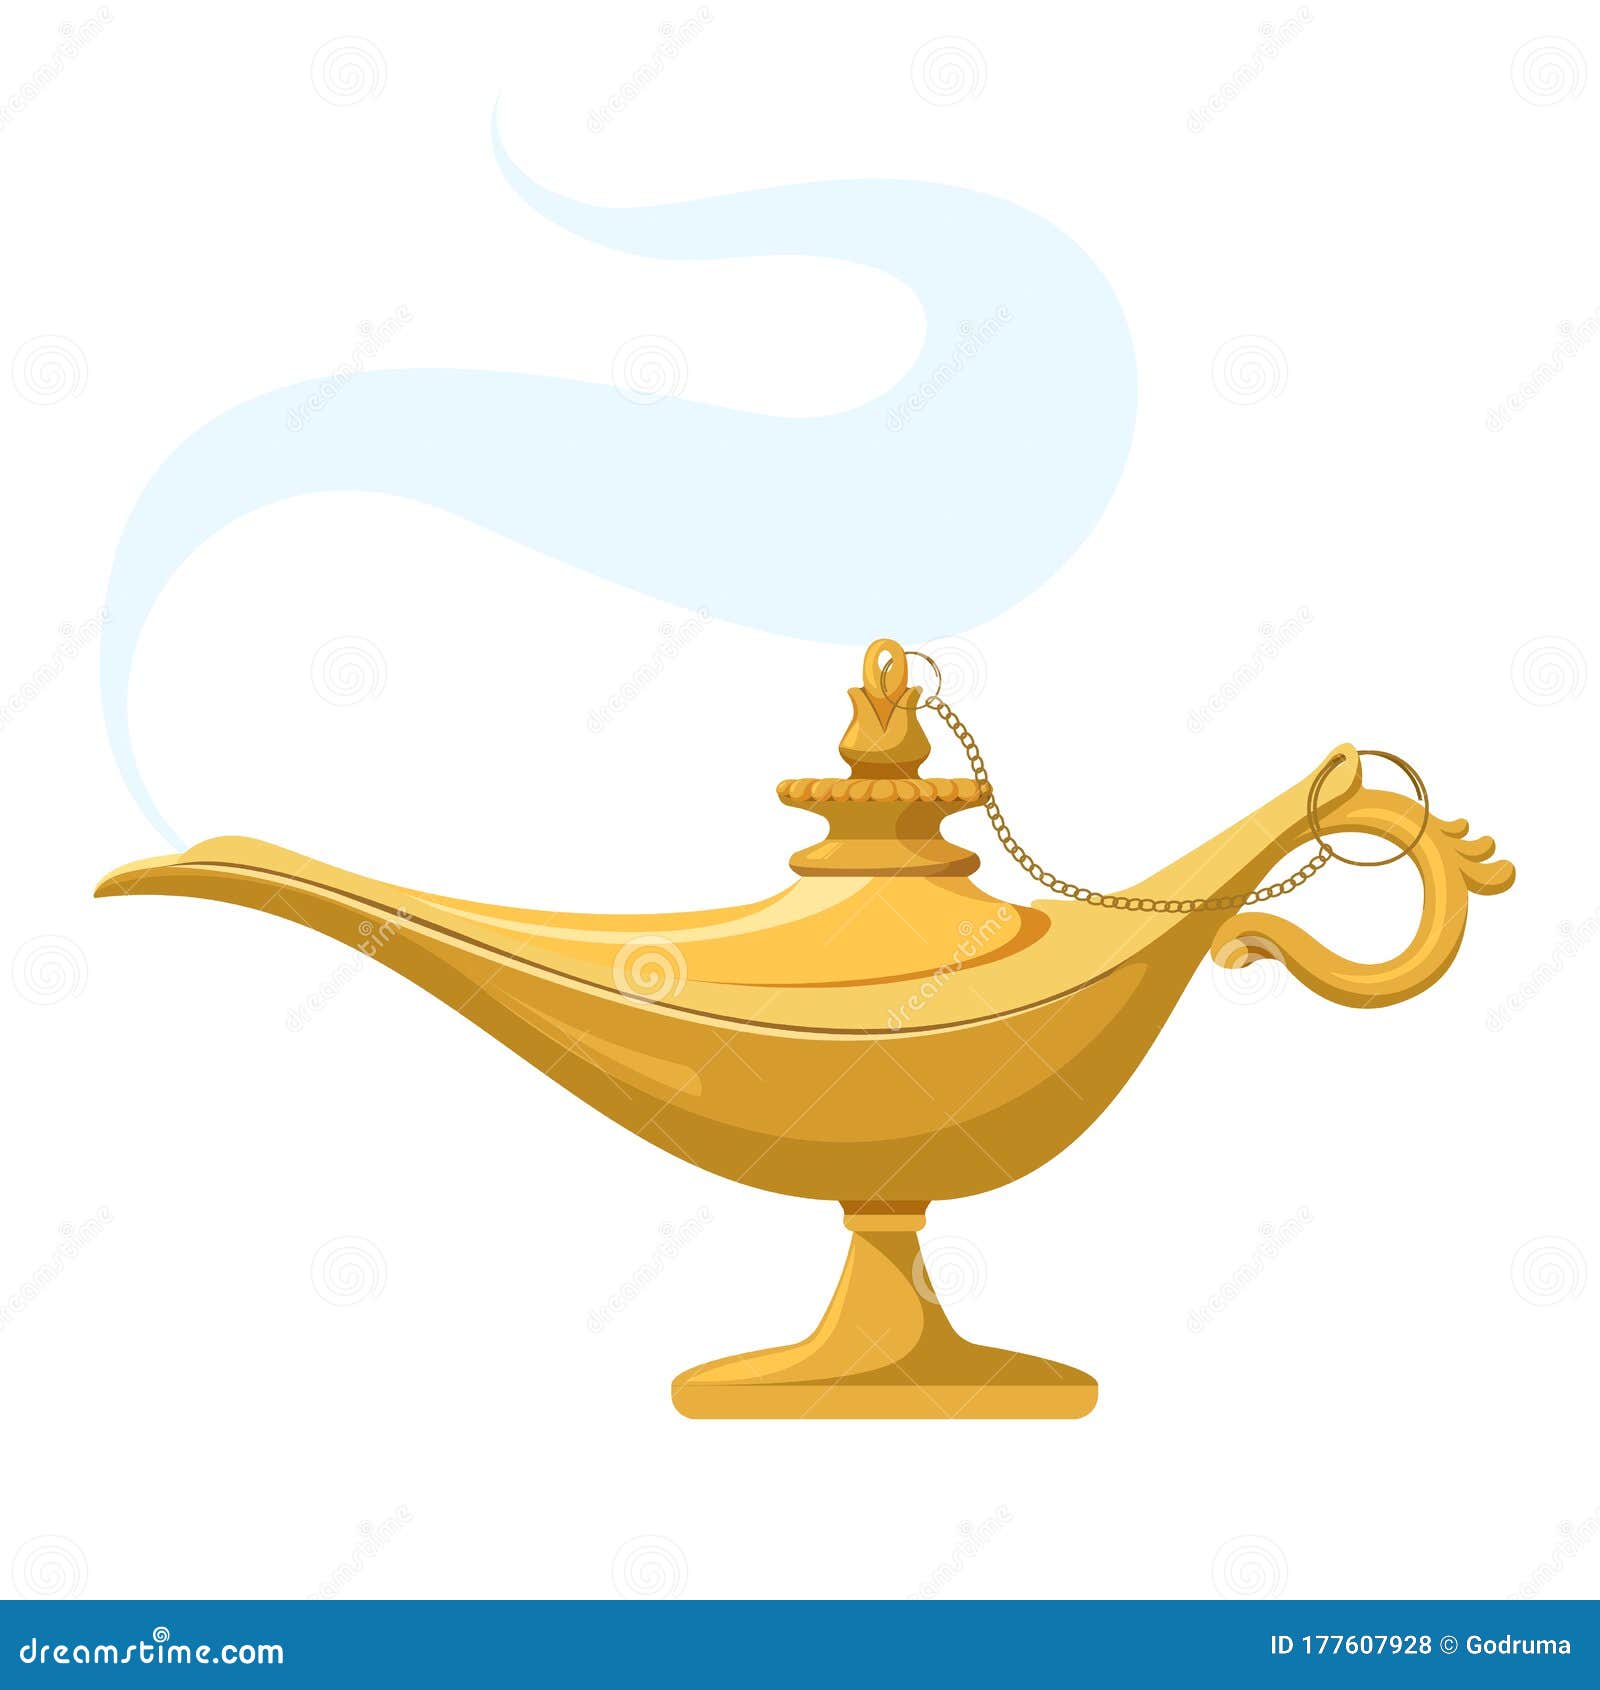 I dream of genie lamp